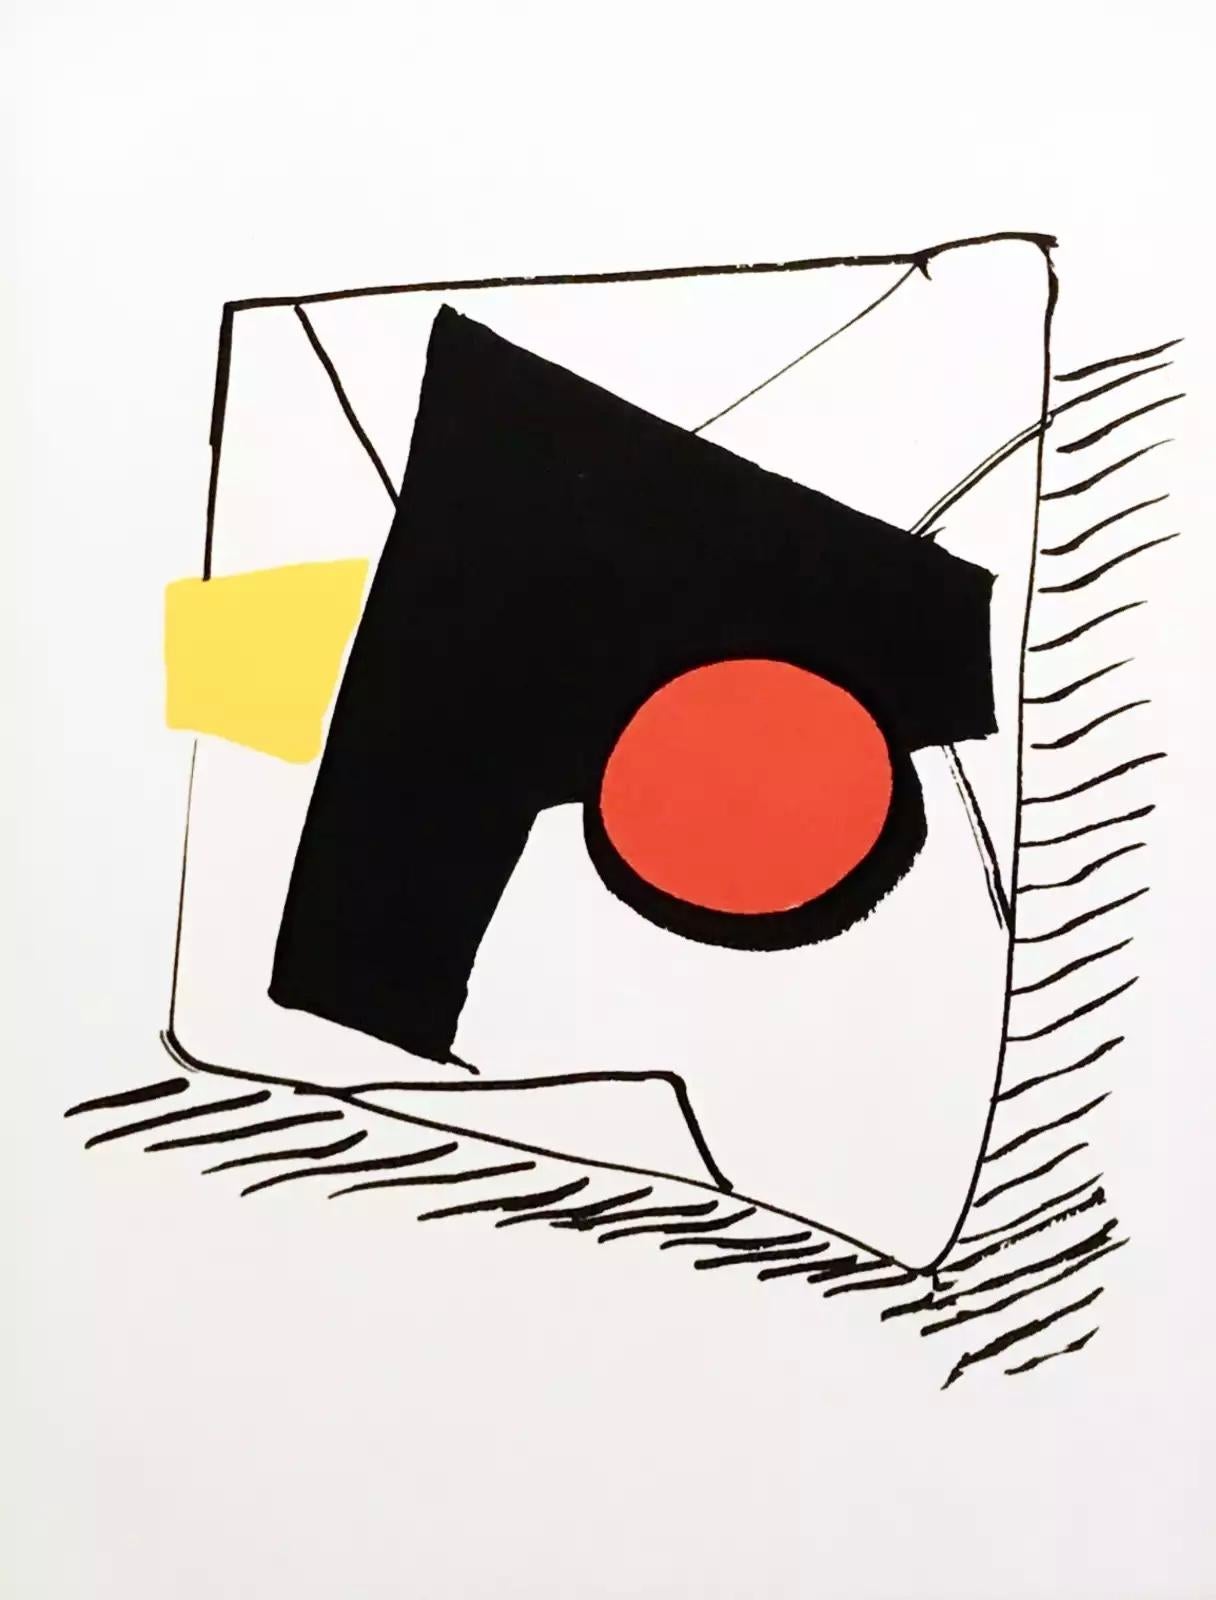 Alexander Calder Lithographie ca. 1976 aus Derrière le miroir:

Farblithographie; 15 x 11 Zoll.
Sehr guter Gesamtzustand; gut präpariert. 
Unsigniert aus einer Auflage von unbekannt.
Von: Derrière le miroir Gedruckt in Frankreich ca. 1973.